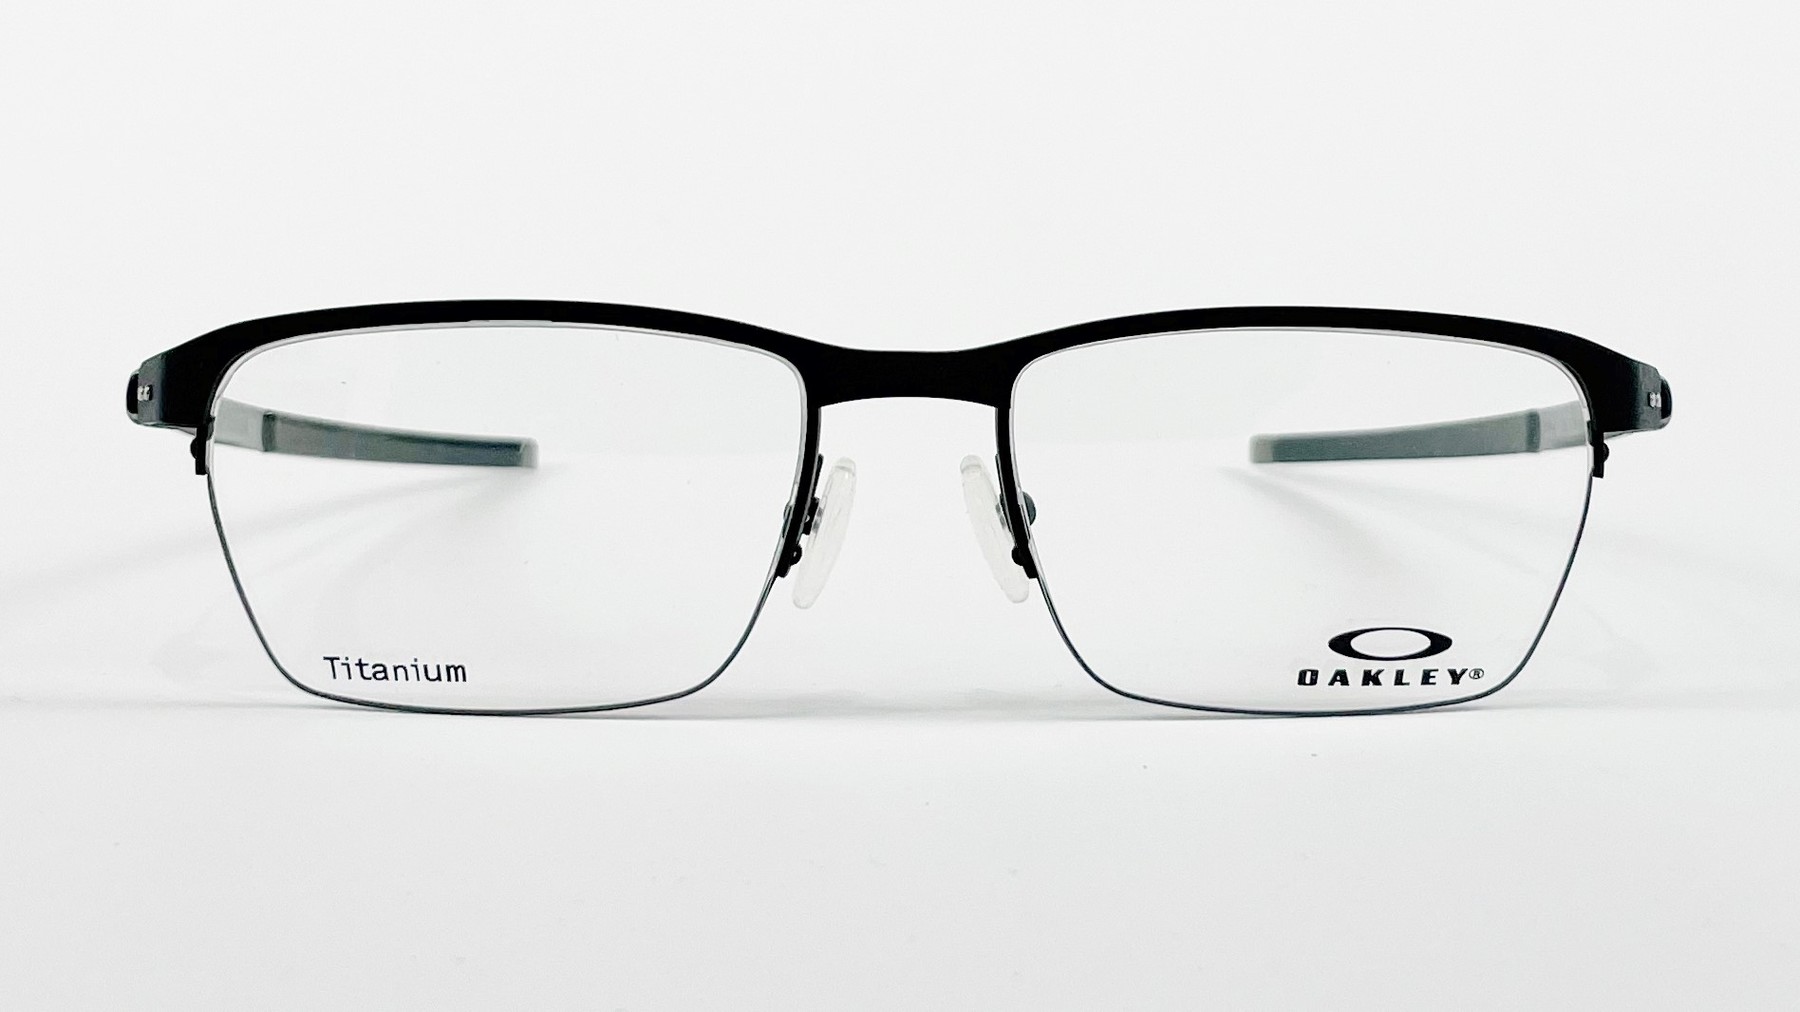 OAKLEY OX5099-153, Korean glasses, sunglasses, eyeglasses, glasses